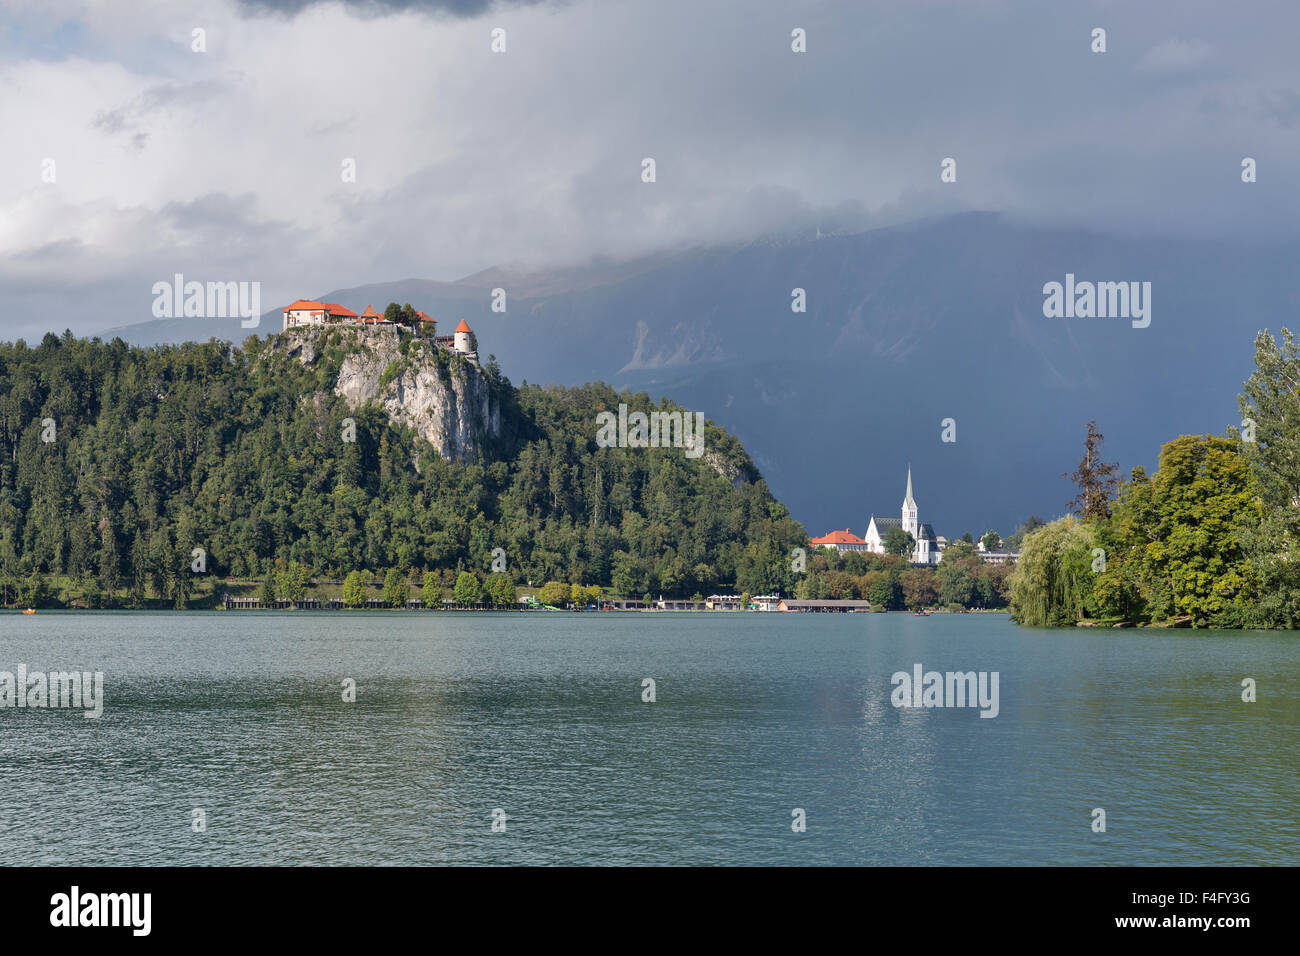 Mittelalterliche Burg und Pfarrkirche St. Martins, mit Blick auf den See von Bled in Slowenien. Einer der malerischen Orte der Nation. Stockfoto